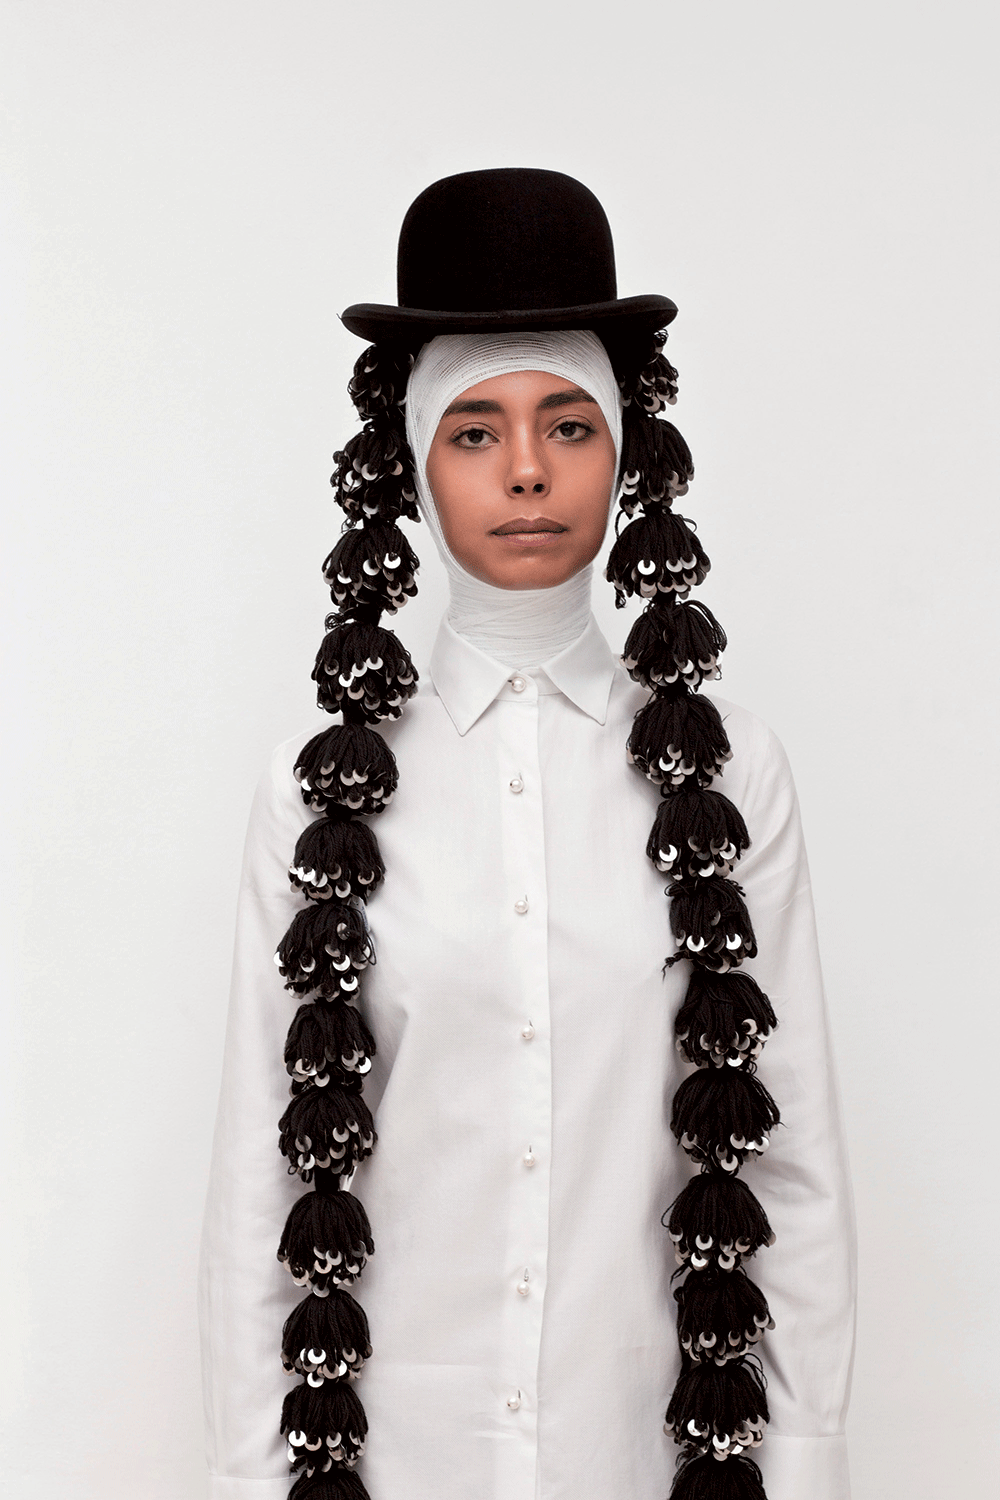 prix 45 000 DH Lamia Naji, God’s hands, série Immaculé, 2011, tirage numérique marouflé sur Dibond et encadré sous plexi, 110 x 150 cm, édition 1/5 © Lamia Naji